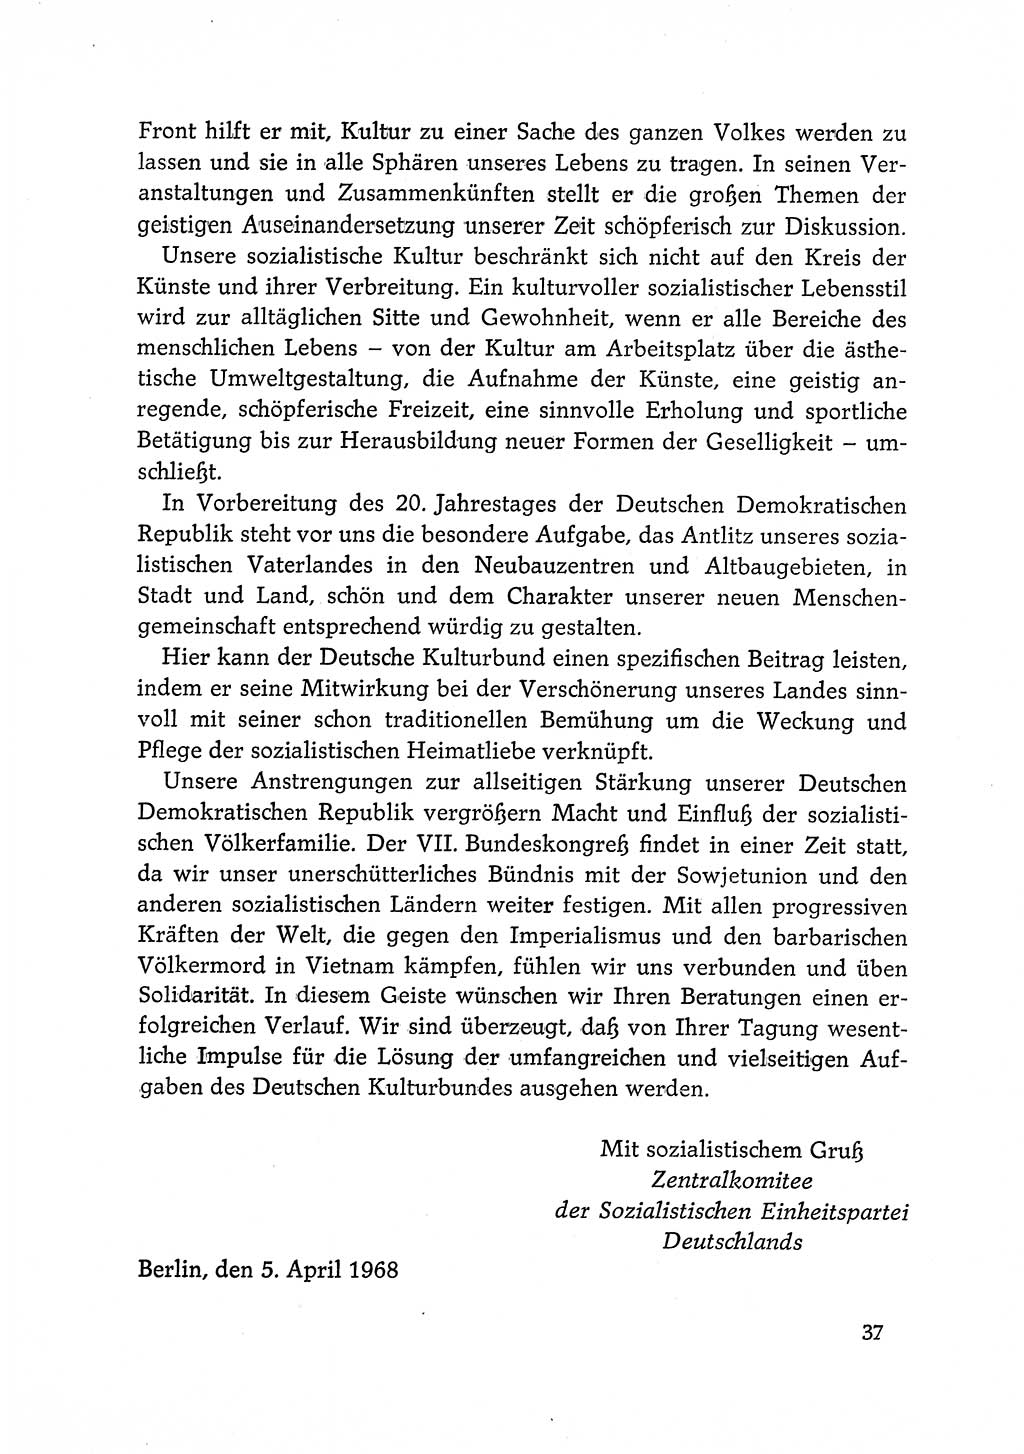 Dokumente der Sozialistischen Einheitspartei Deutschlands (SED) [Deutsche Demokratische Republik (DDR)] 1968-1969, Seite 37 (Dok. SED DDR 1968-1969, S. 37)